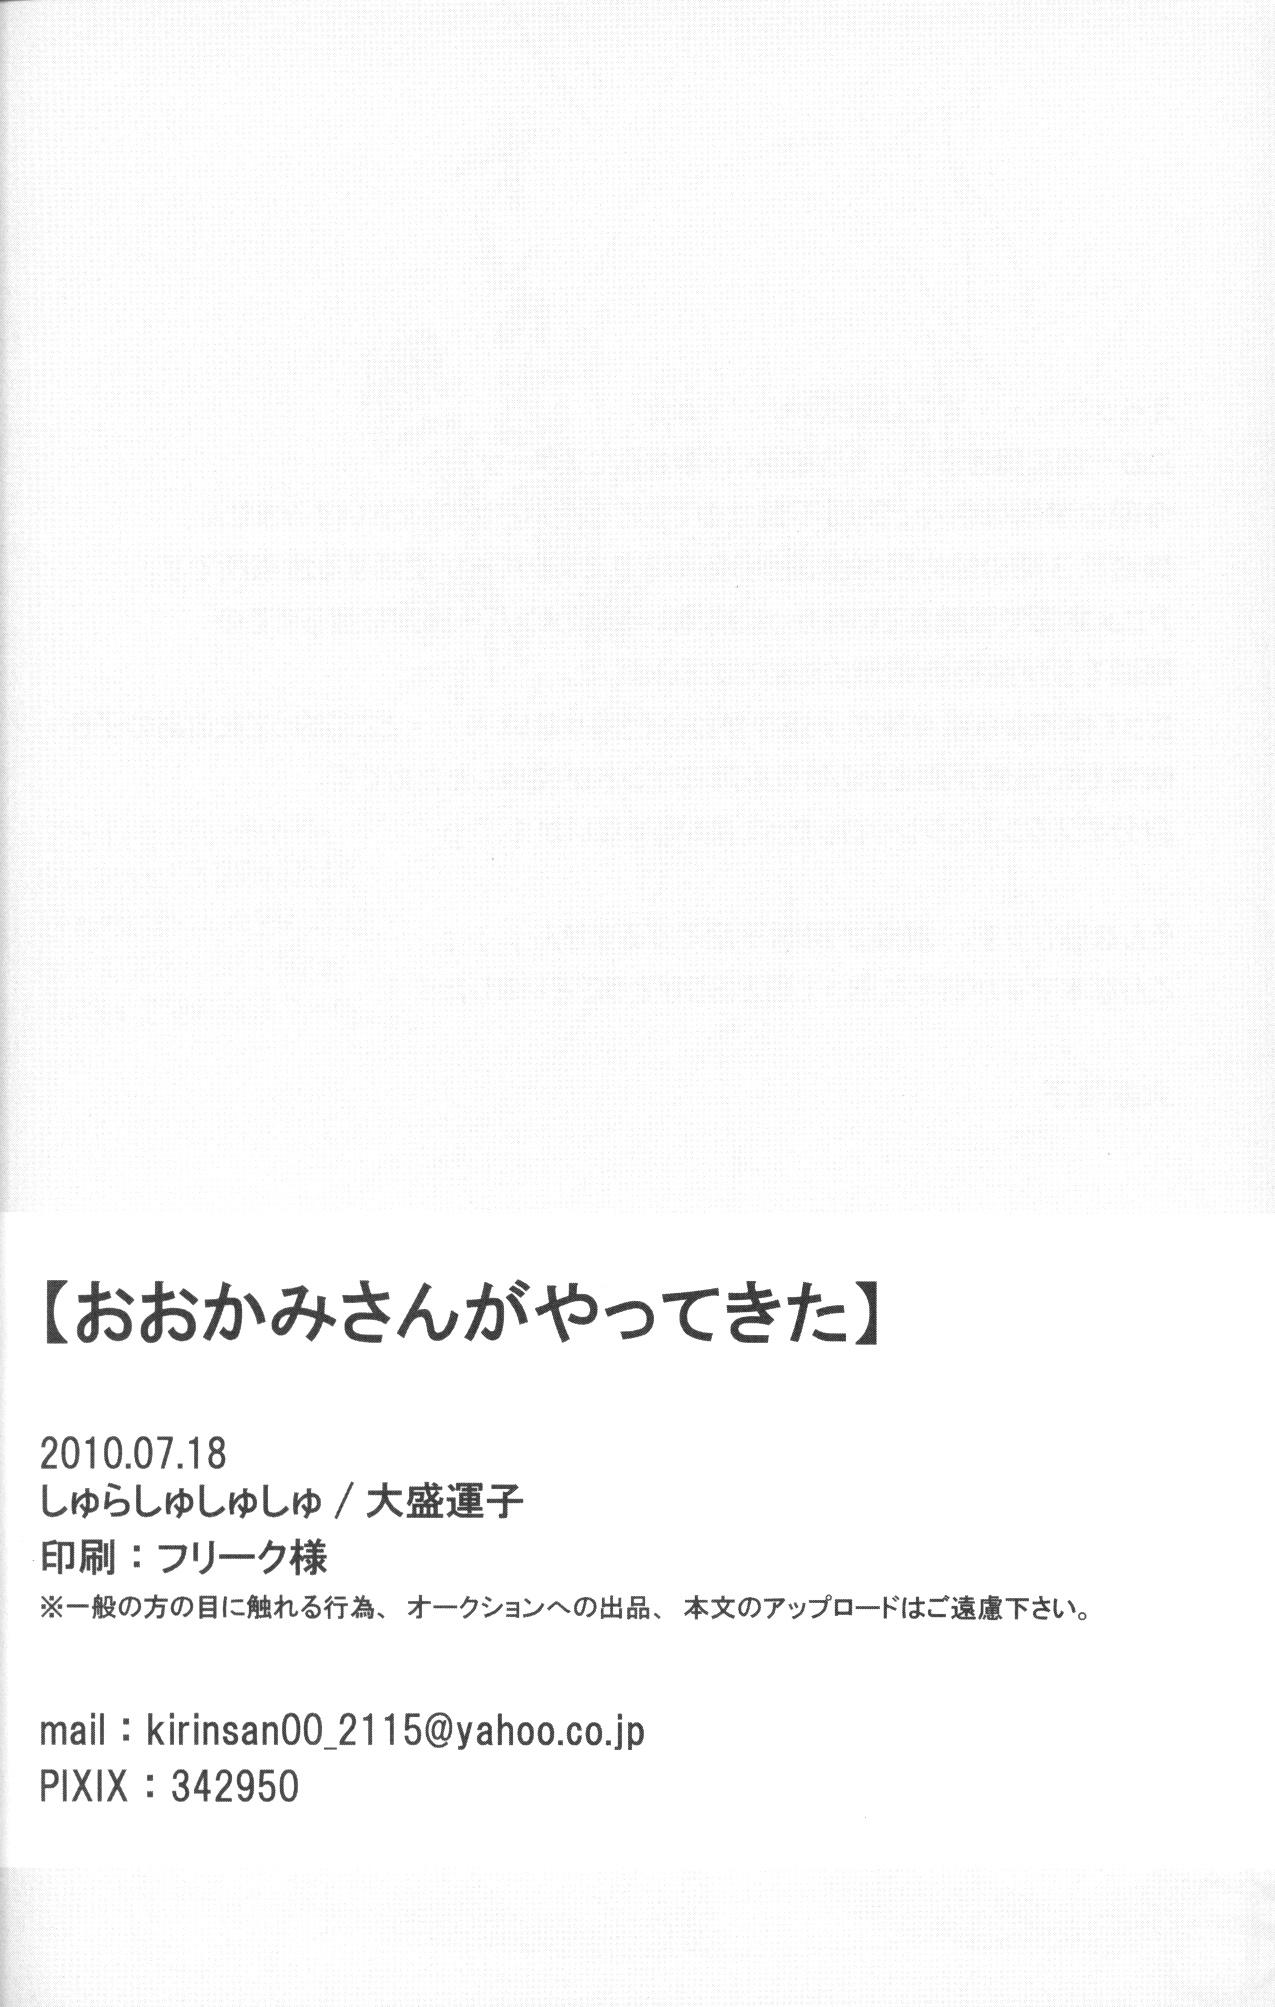 Panty Ookami san ga yatte kita - Inazuma eleven Natural - Page 21